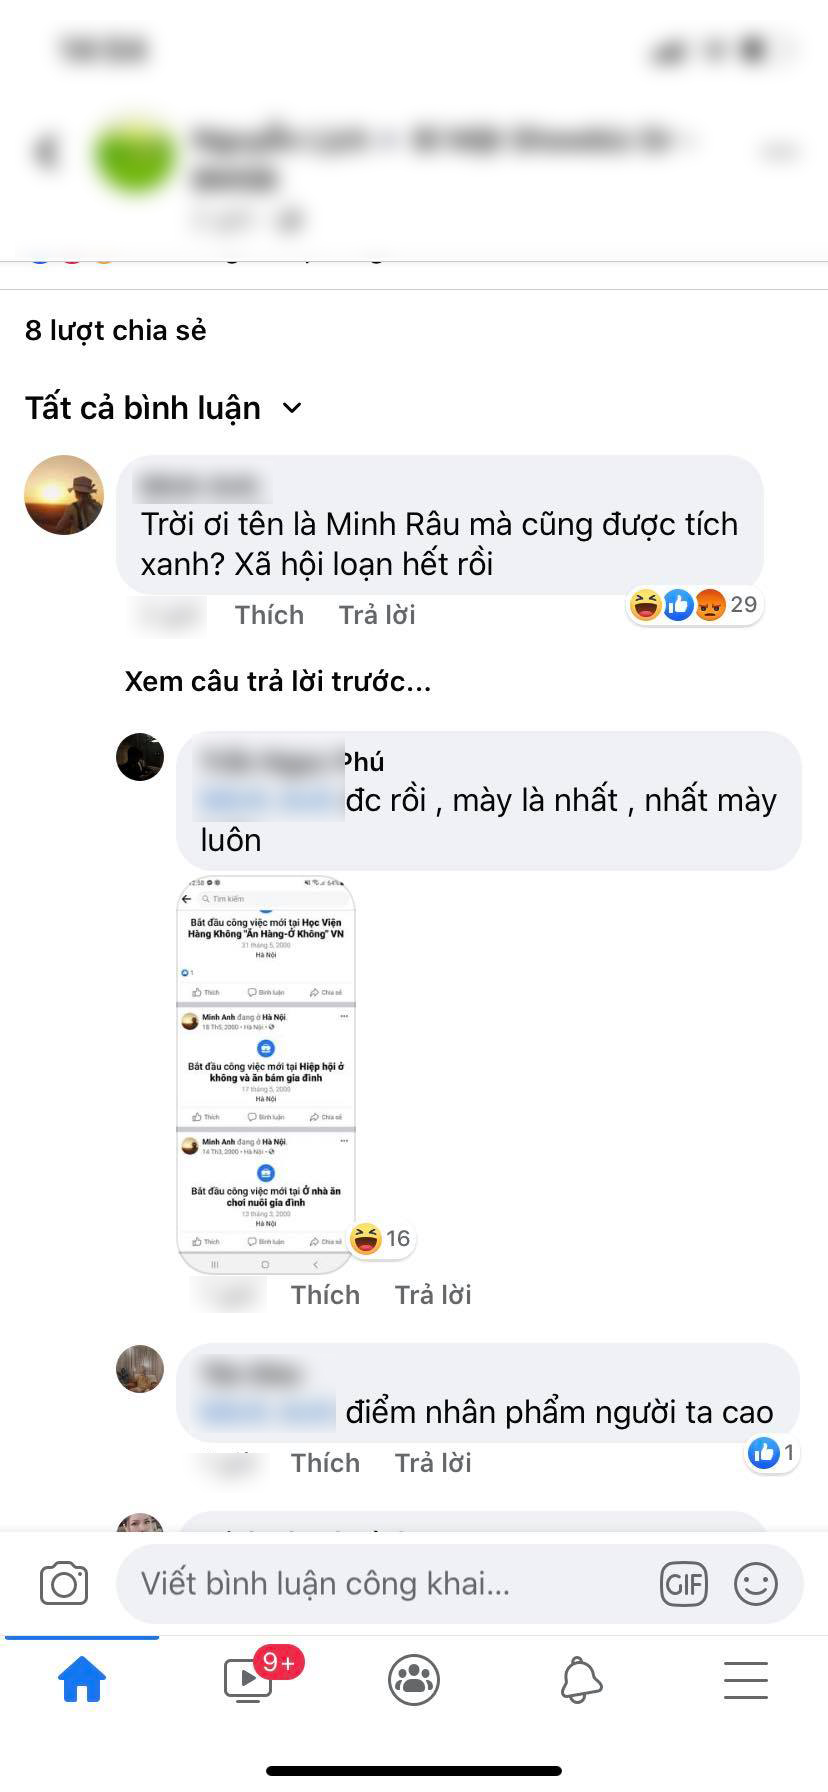 Anh bán rau Minh Râu nhận tick xanh Facebook khi trở thành hiện tượng MXH - Ảnh 2